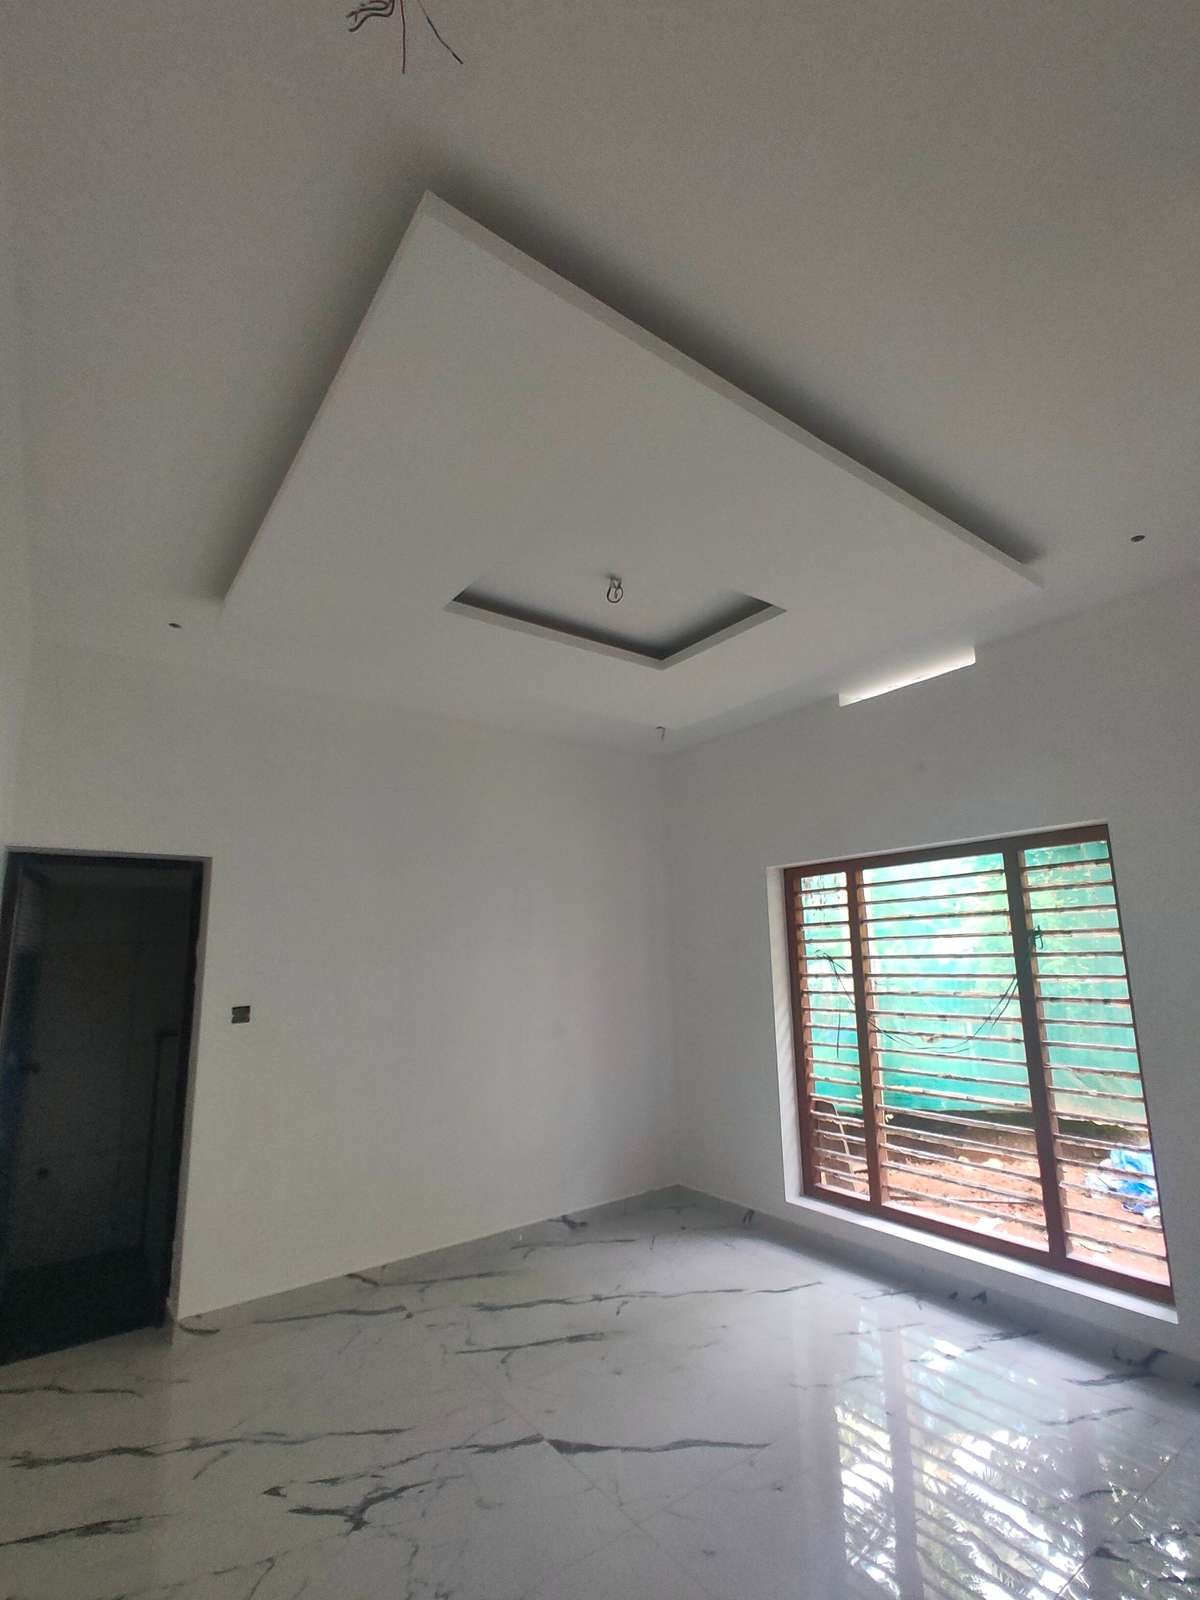 Ceiling, Flooring Designs by Civil Engineer Hijas Ahammed, Kozhikode | Kolo